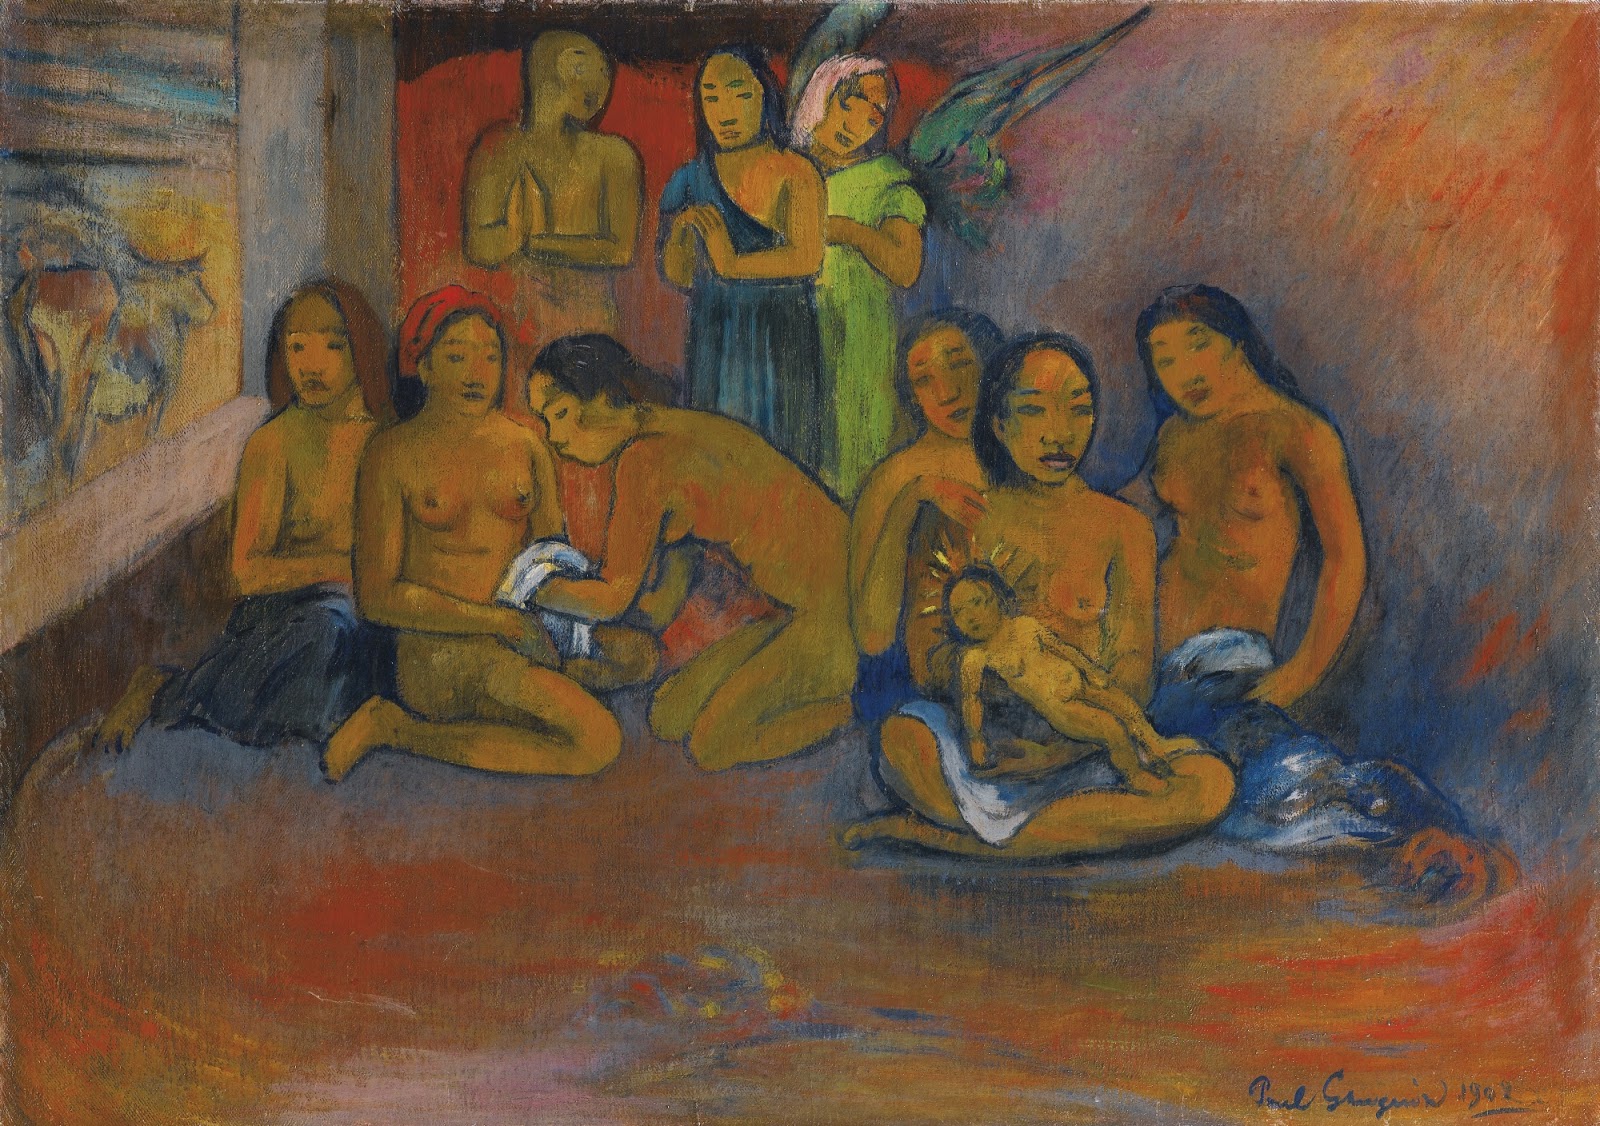 Paul+Gauguin-1848-1903 (380).jpg